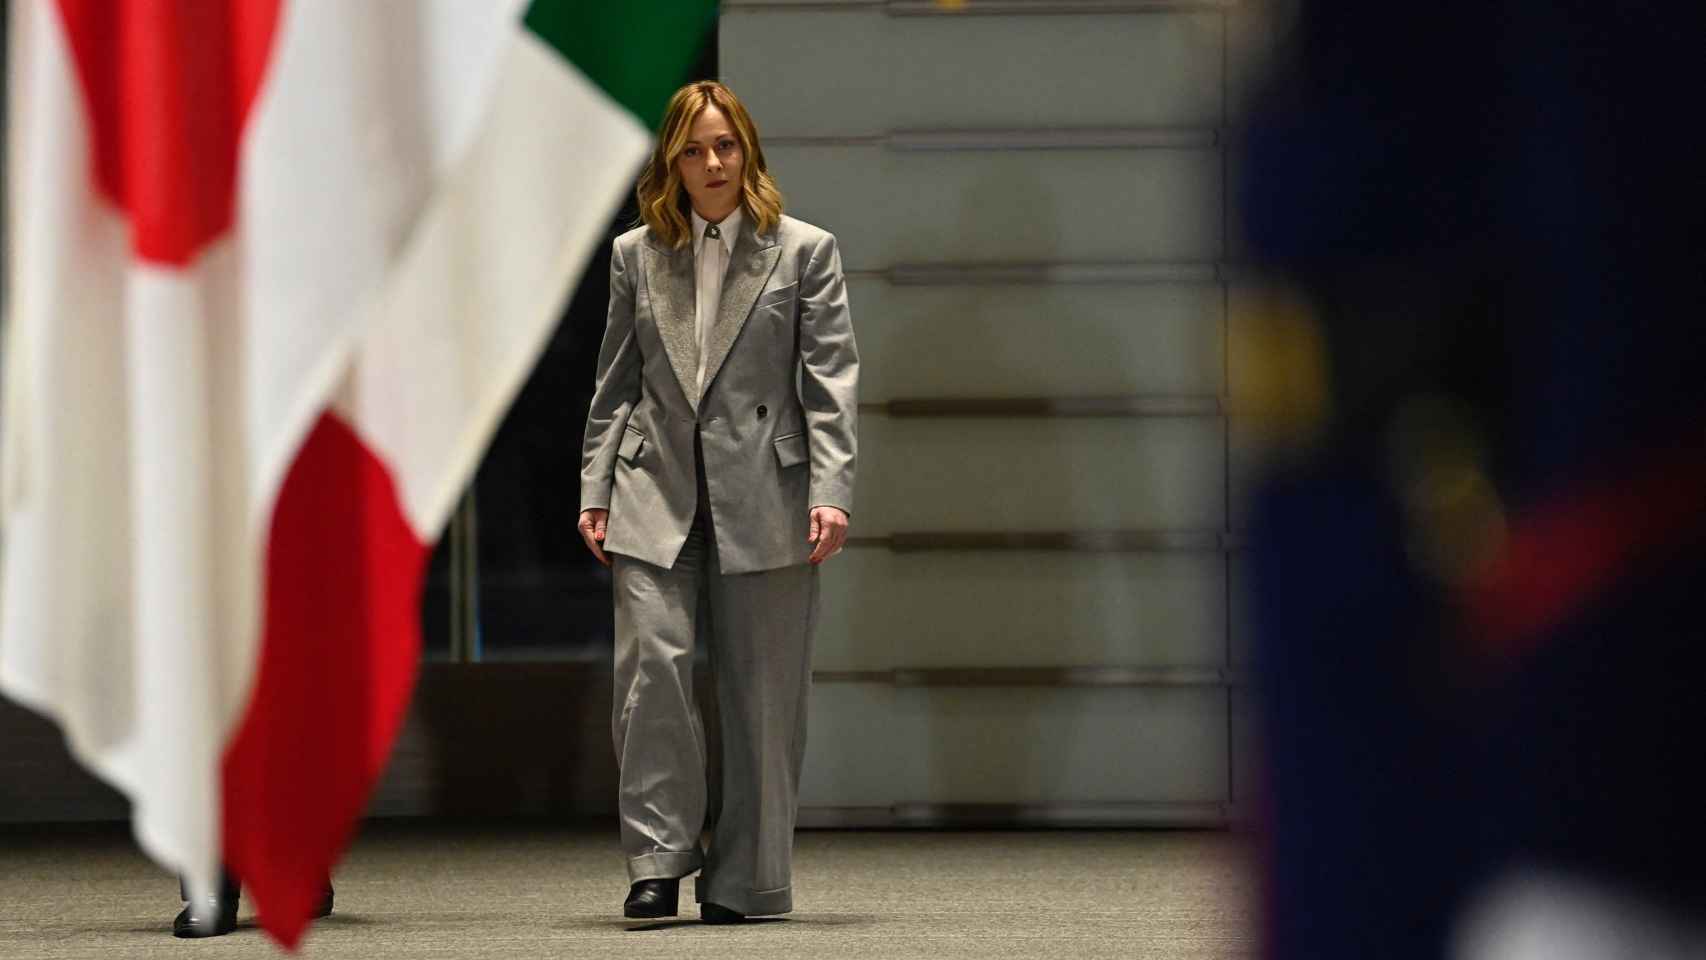 Giorgia Meloni, primera ministra de Italia, asiste a la guardia de honor antes de reunirse con Fumio Kishida, primer ministro de Japón, el pasado lunes.